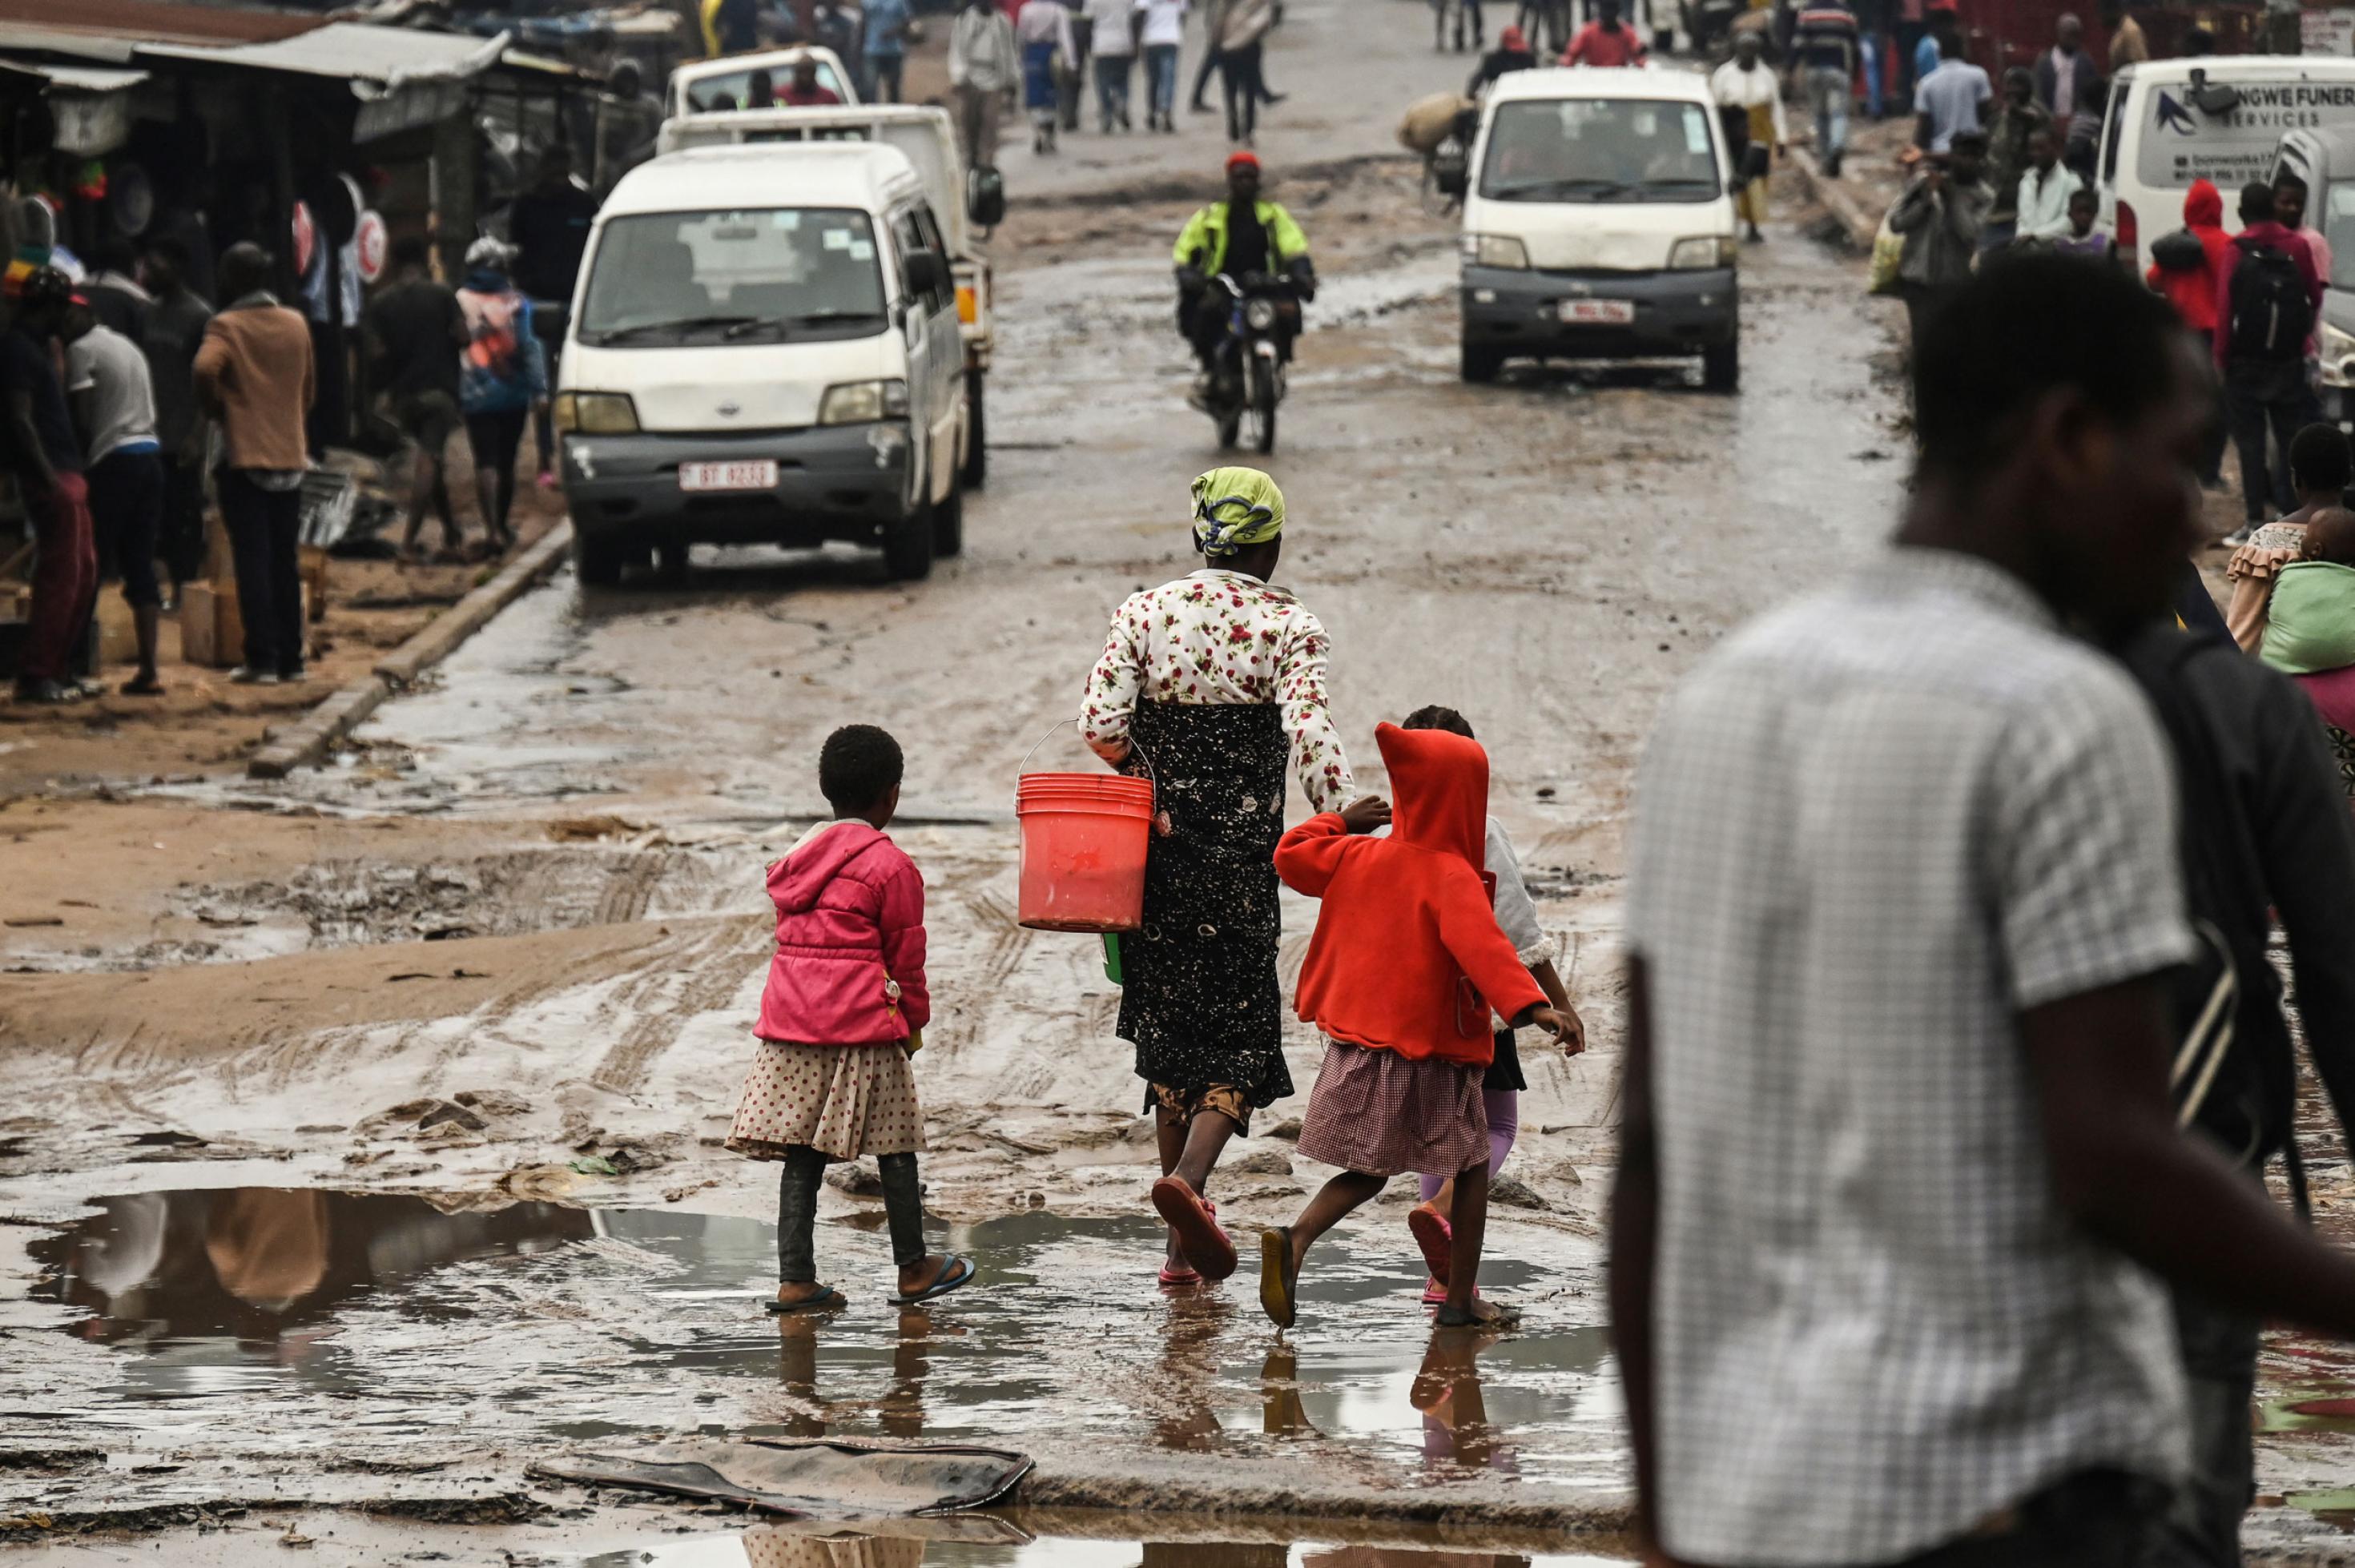 Die Strasse ist nass, teils sind Pfützen zu sehen, eine Frau und zwei Kinder gehen dort entlang, außerdem andere Passanten und Minibustaxis.